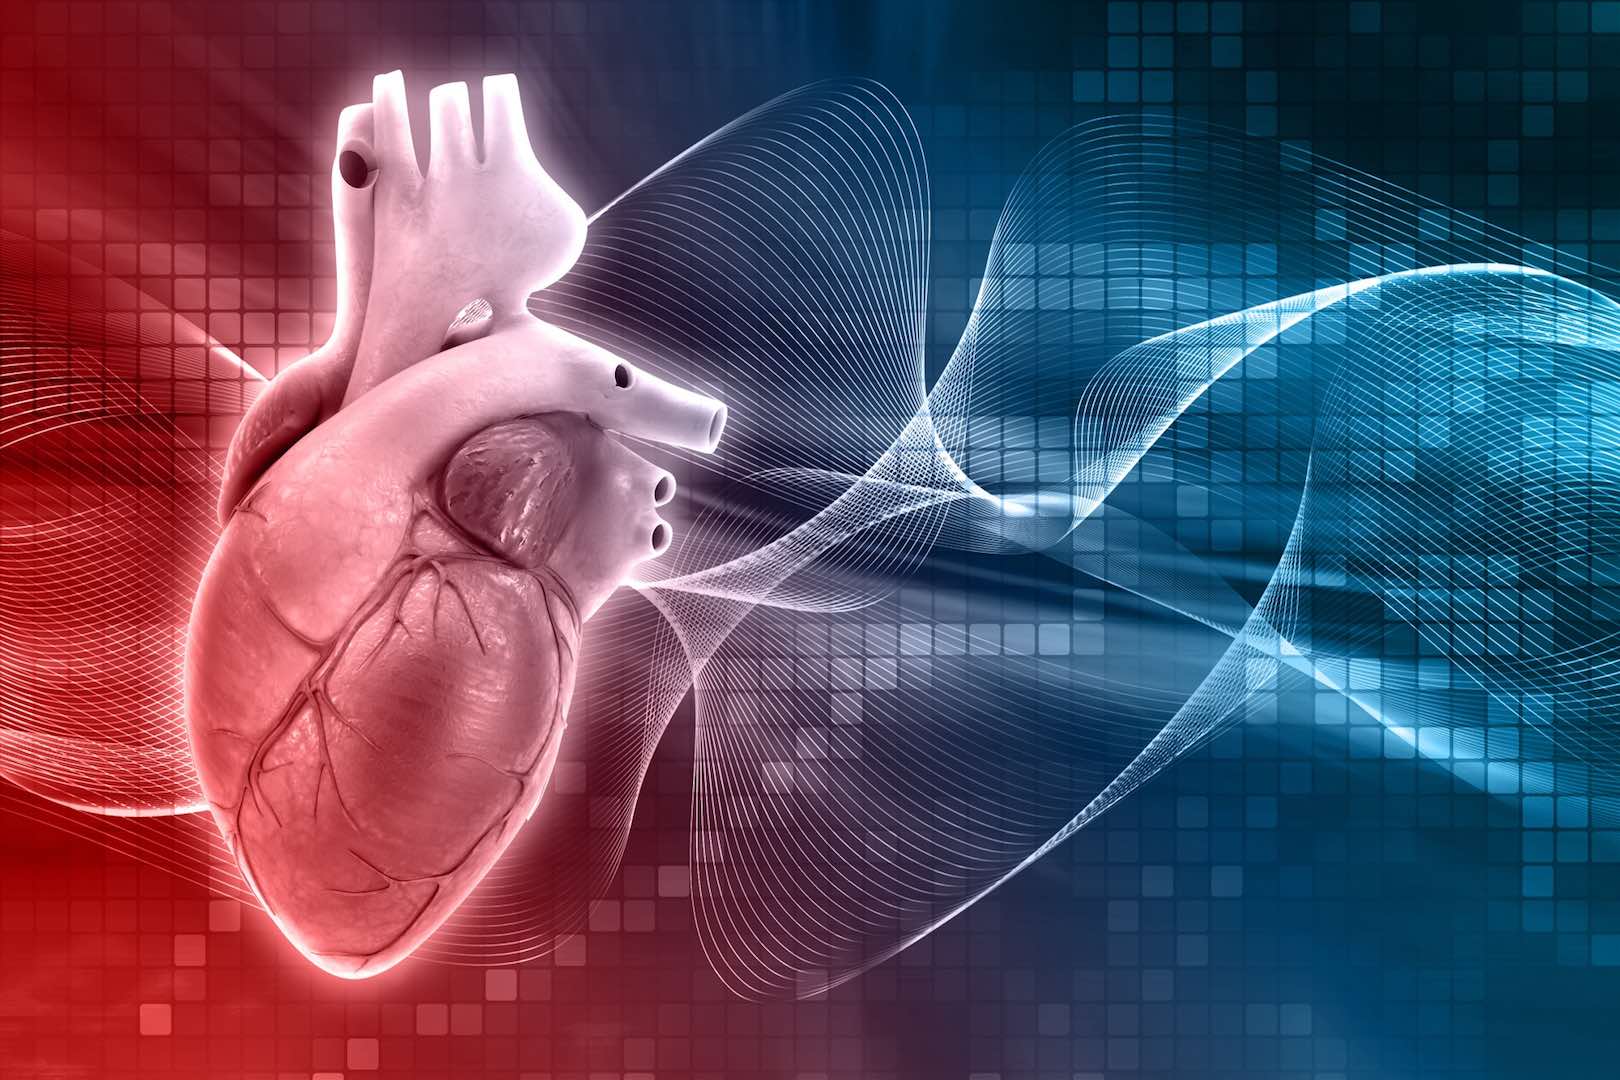 دراسة: الصيام المتقطع يزيد من خطر الوفاة بأمراض القلب